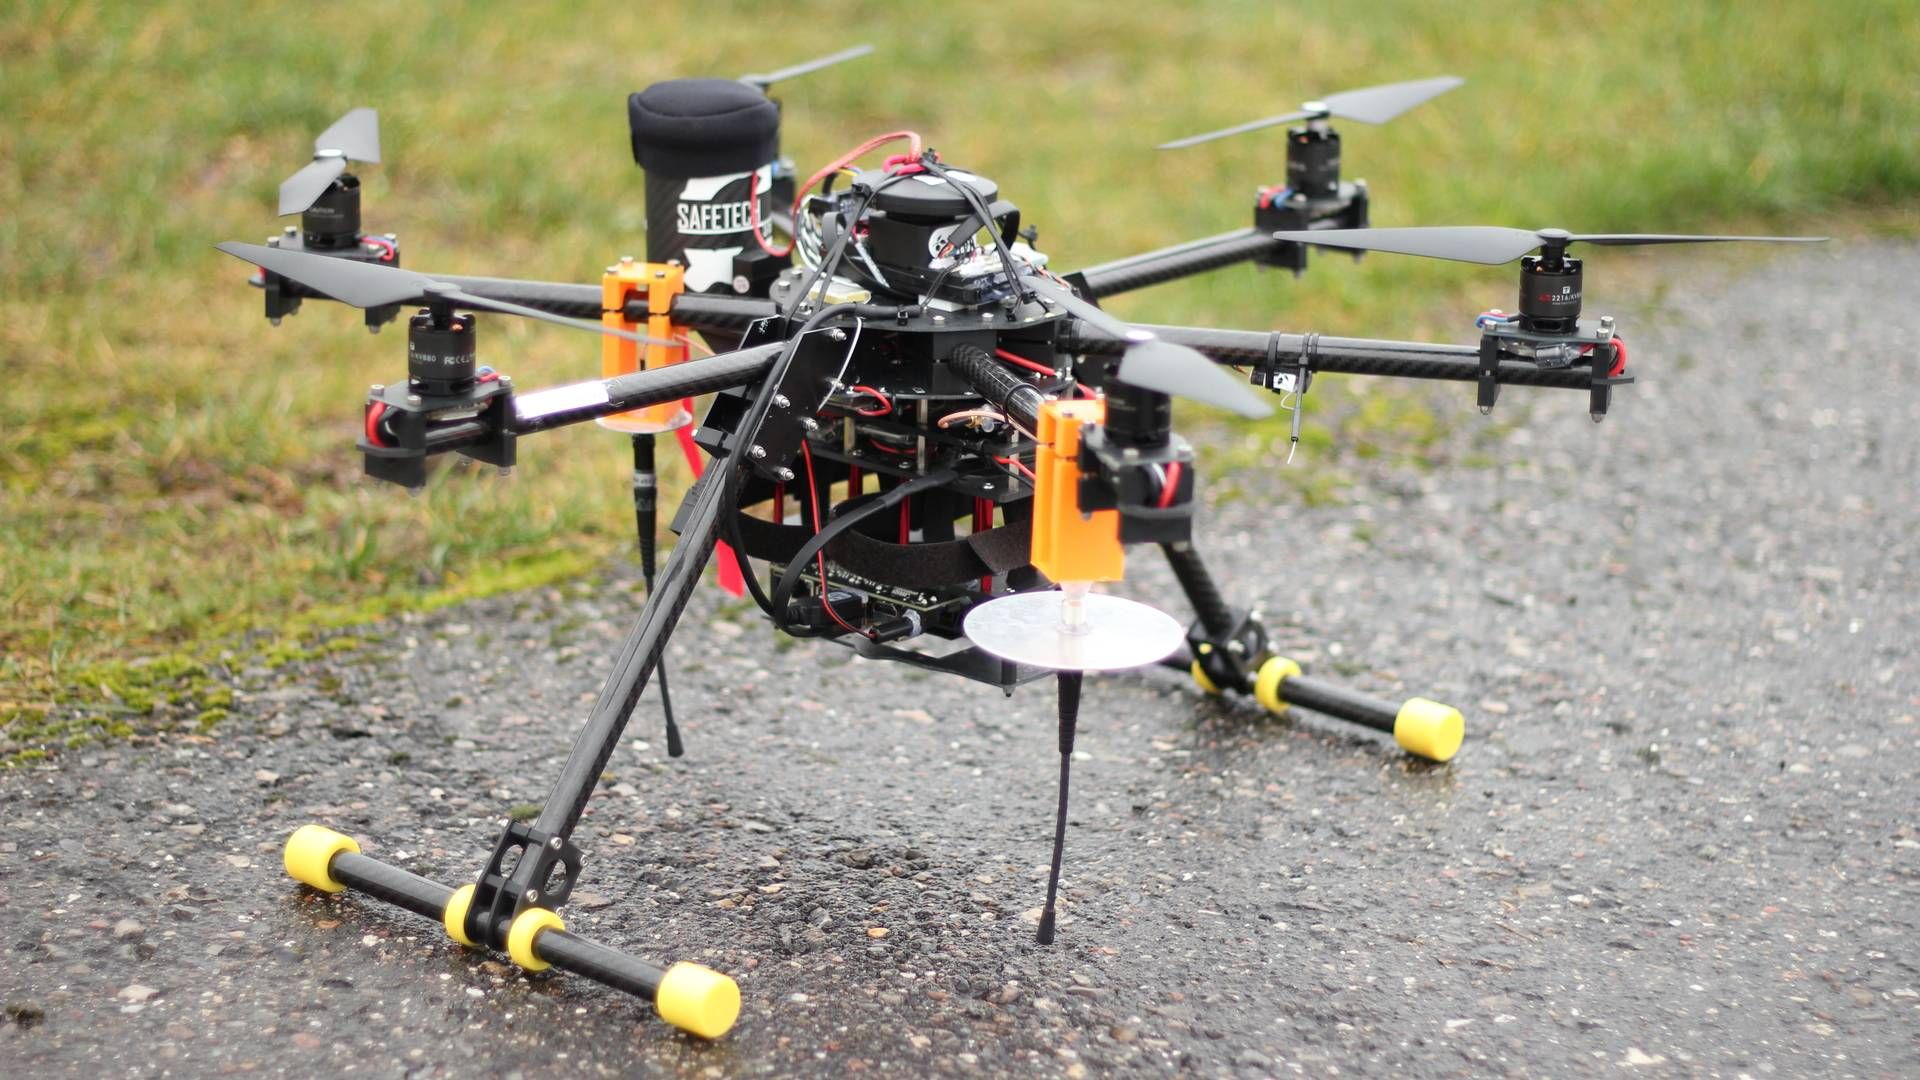 Denne drone er en af Holos testdroner, som bliver brugt i projektet Healthdrone, der i første omgang skal munde ud i transport af blodprøver i Region Syddanmark. | Foto: Holo/PR